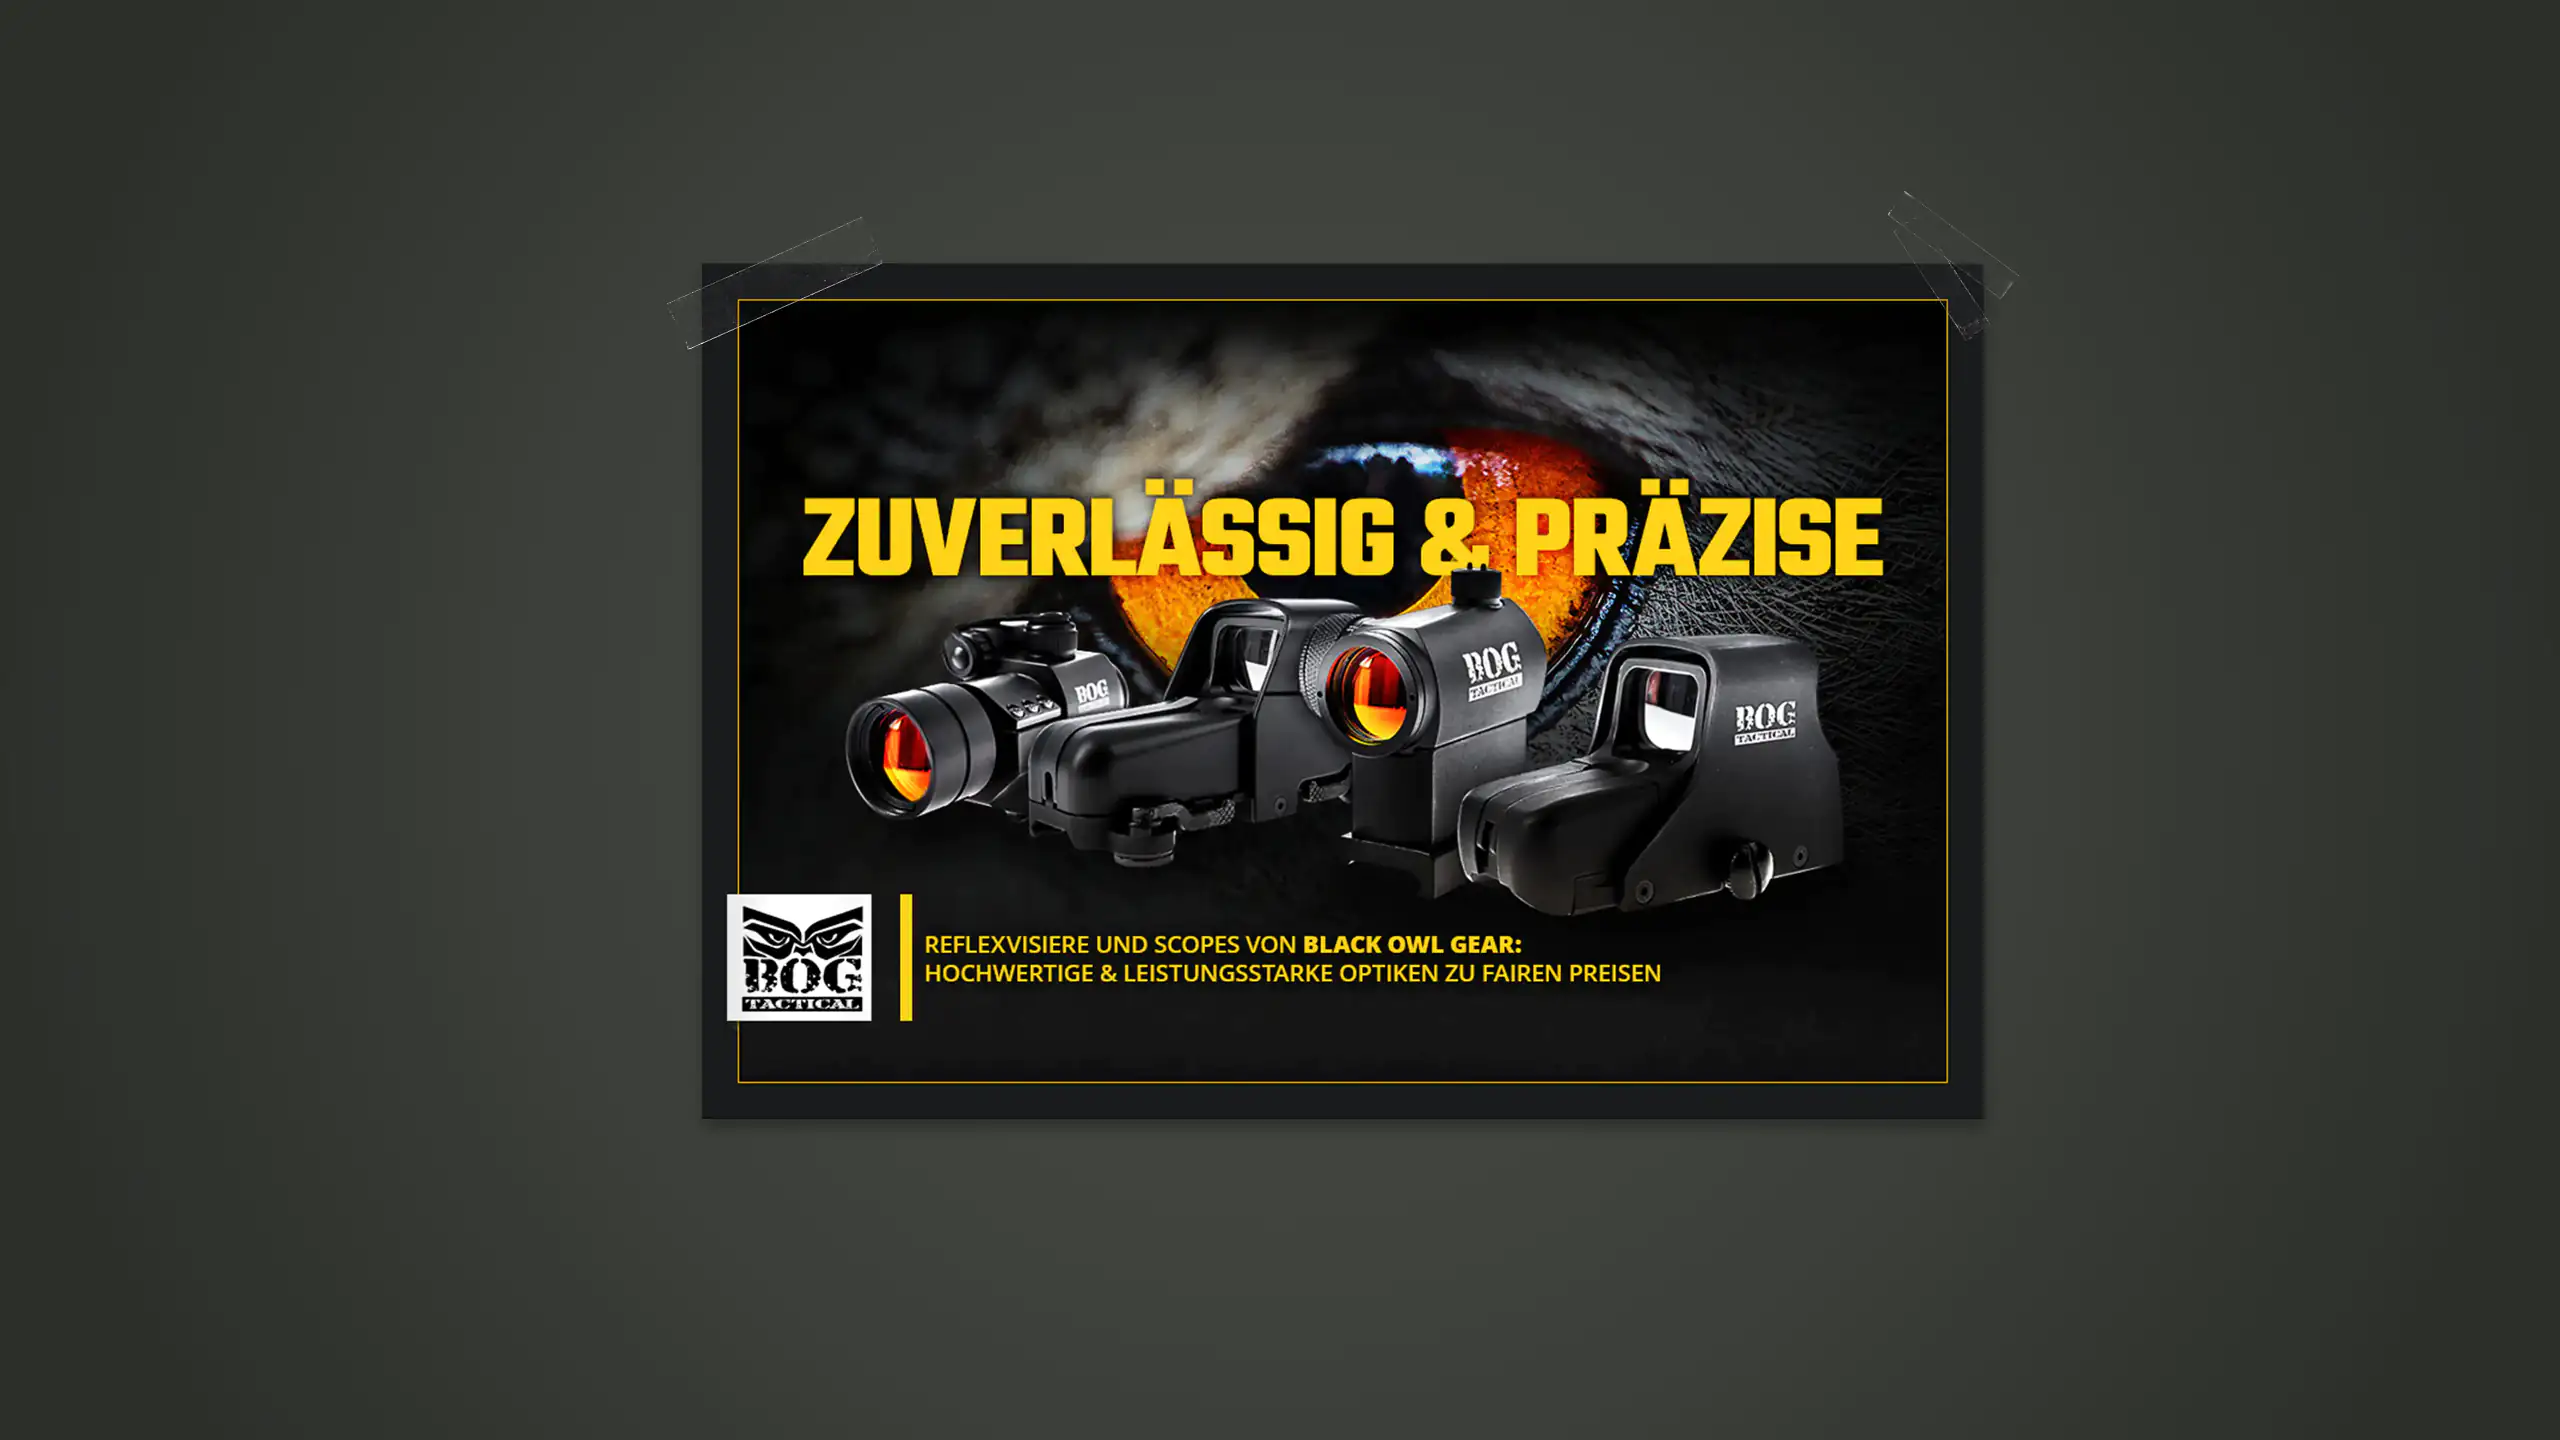 Anzeige des Unternehmens Sniper Sniper-Airsoft Supply GmbH mit dem Titel "Zuverlässig & präzise" mit unterschiedlichen Visieren. Das Ganze ist auf dunkelgrauem Hintergrund.